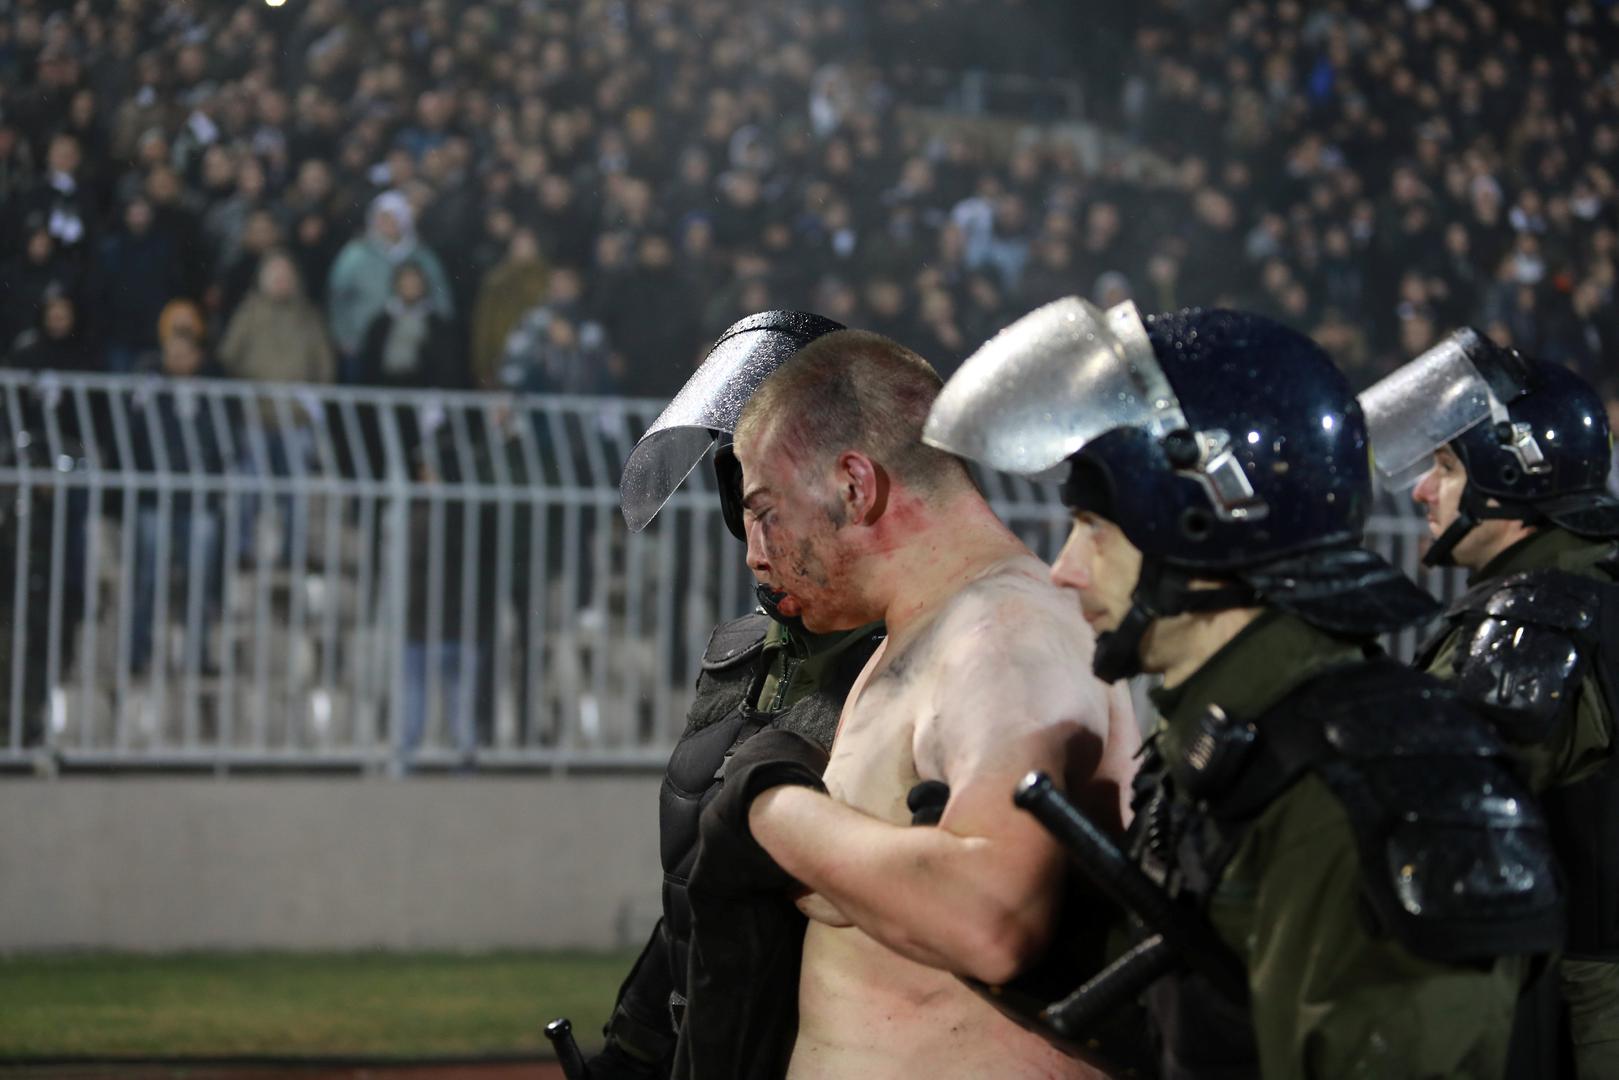 Incident se dogodio na tribini na kojoj su se nalazili Partizanovi navijači. Pucalo je na sve strane, a tučnjava je dugo trajala.